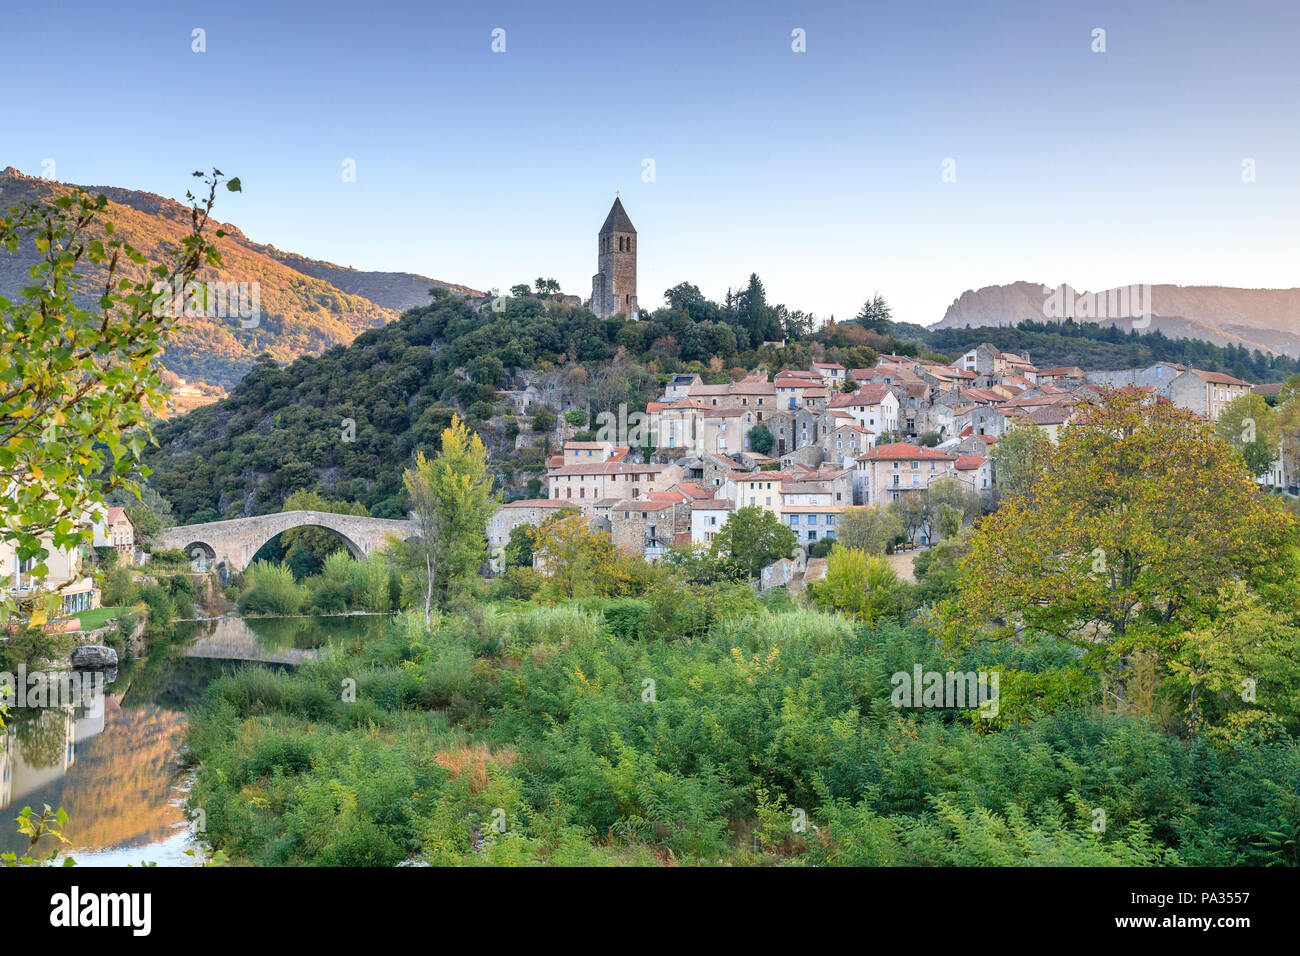 Frankreich, Herault, Haut Languedoc Regionale Naturpark, Olargues, beschriftet Les Plus beaux villages de France (Schönste Dörfer Frankreichs), R Stockfoto